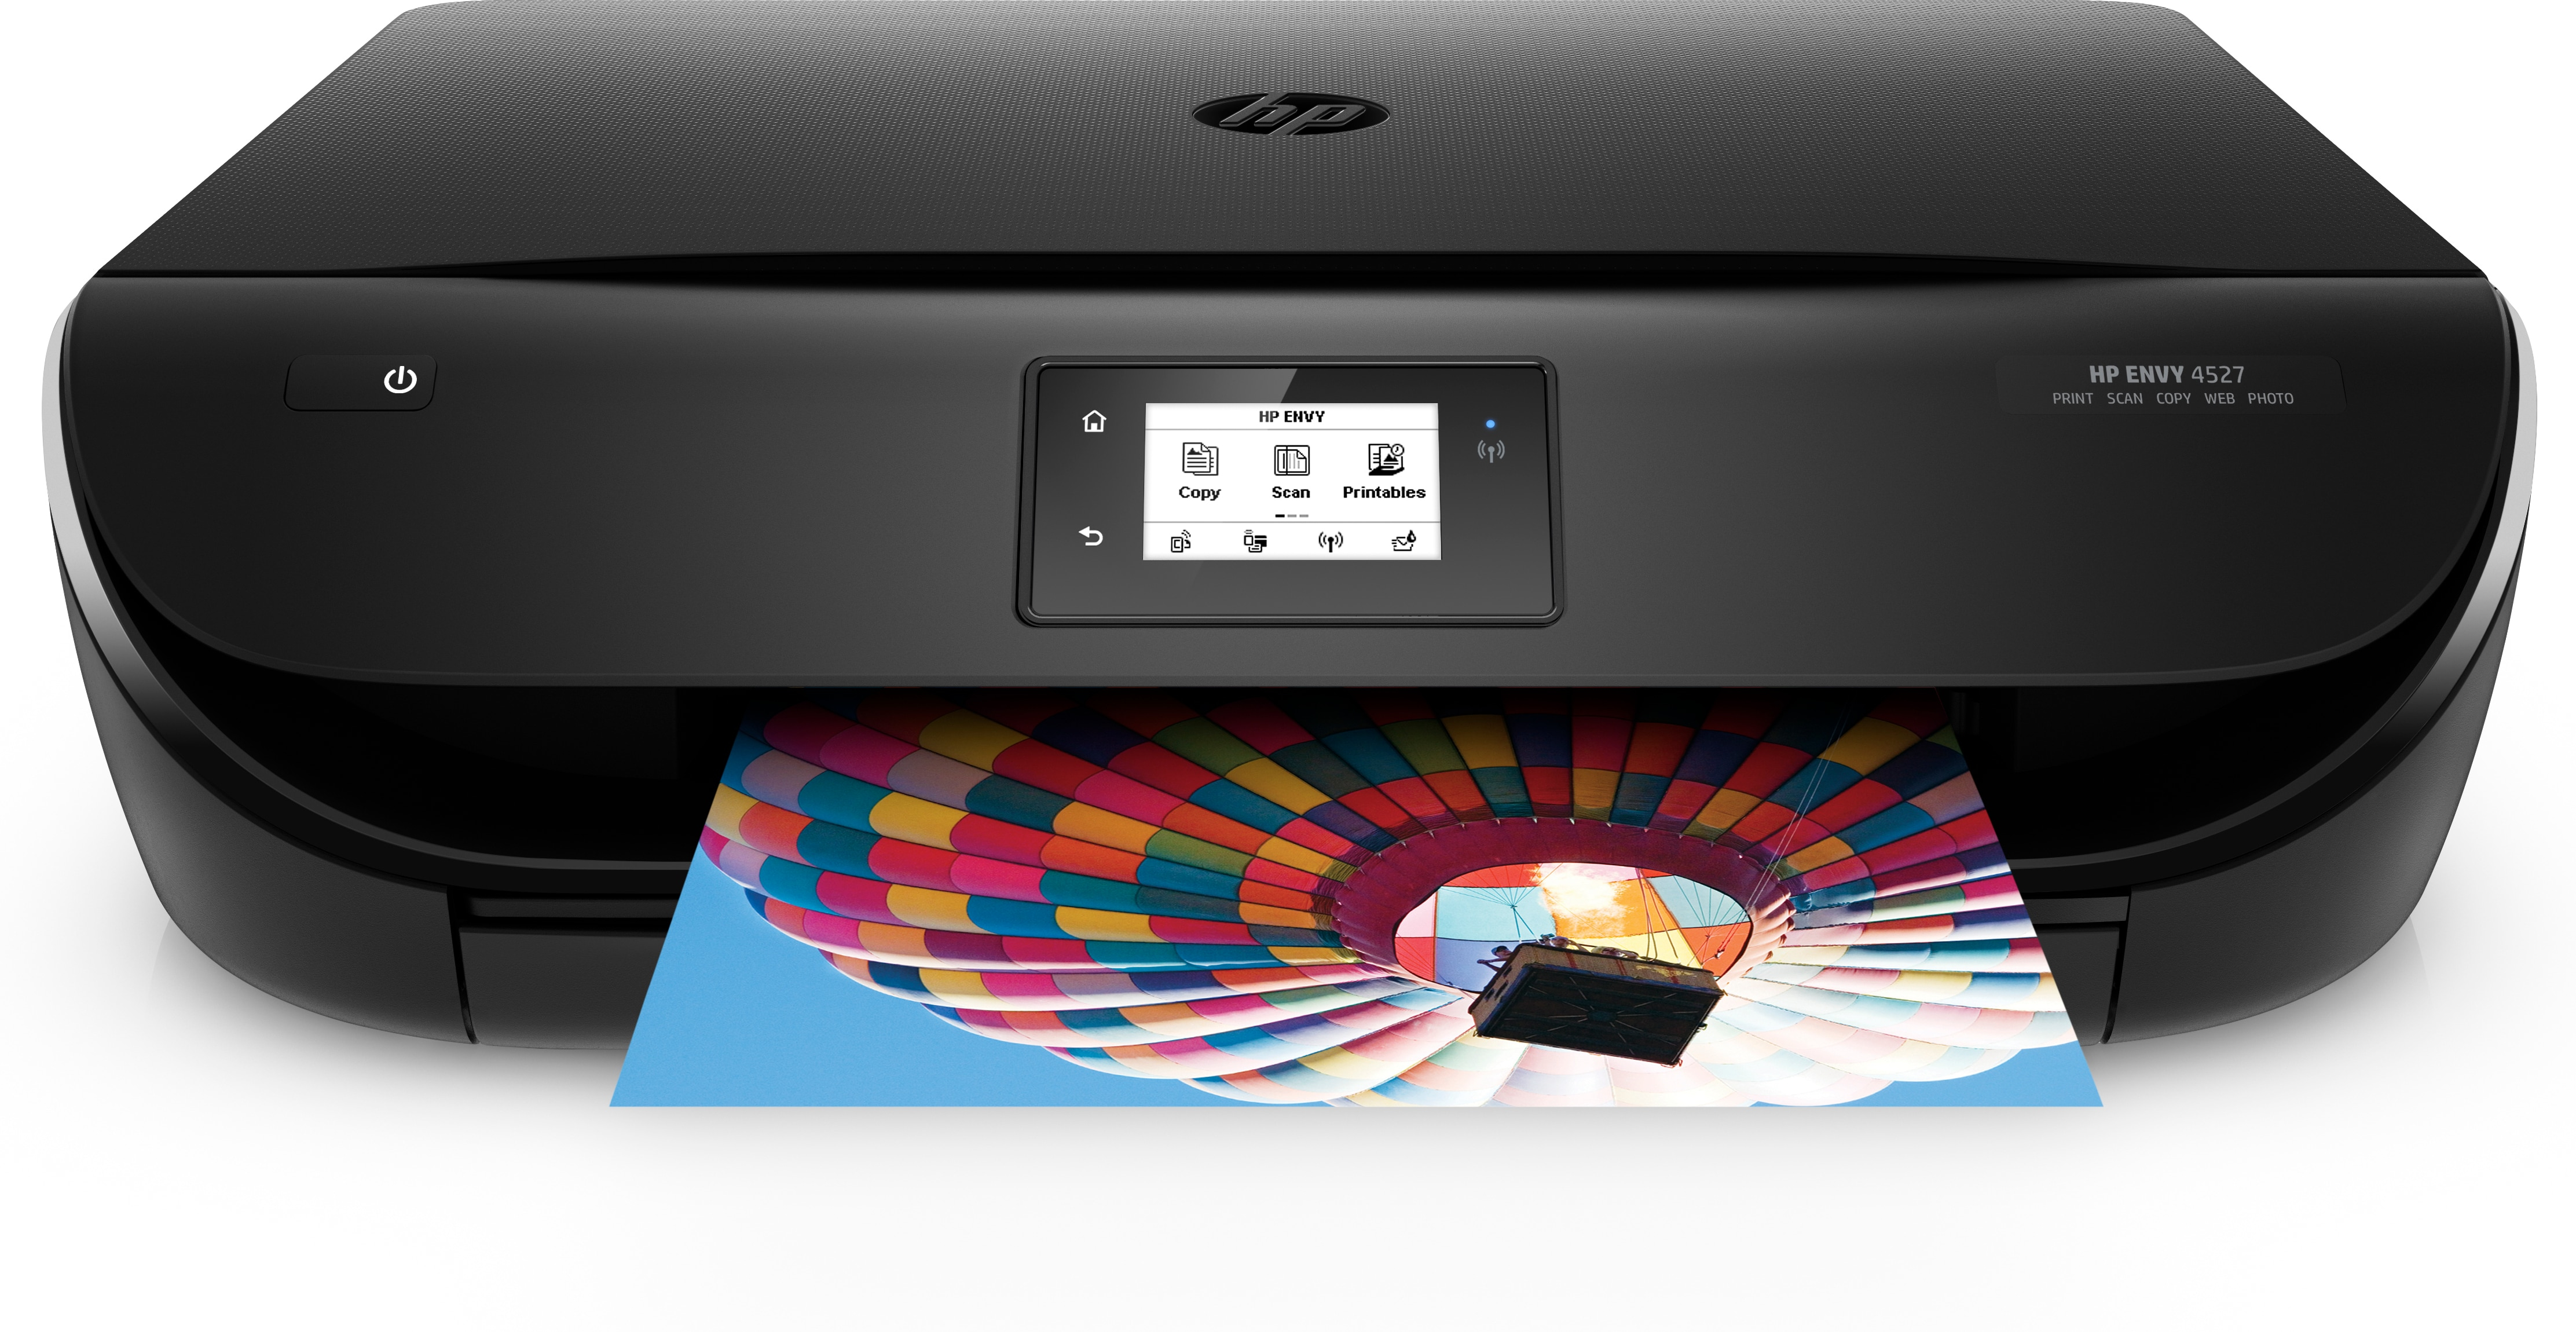 HP Imprimante multifonction - Jet d'encre - WiFi - Envy 4525 pas